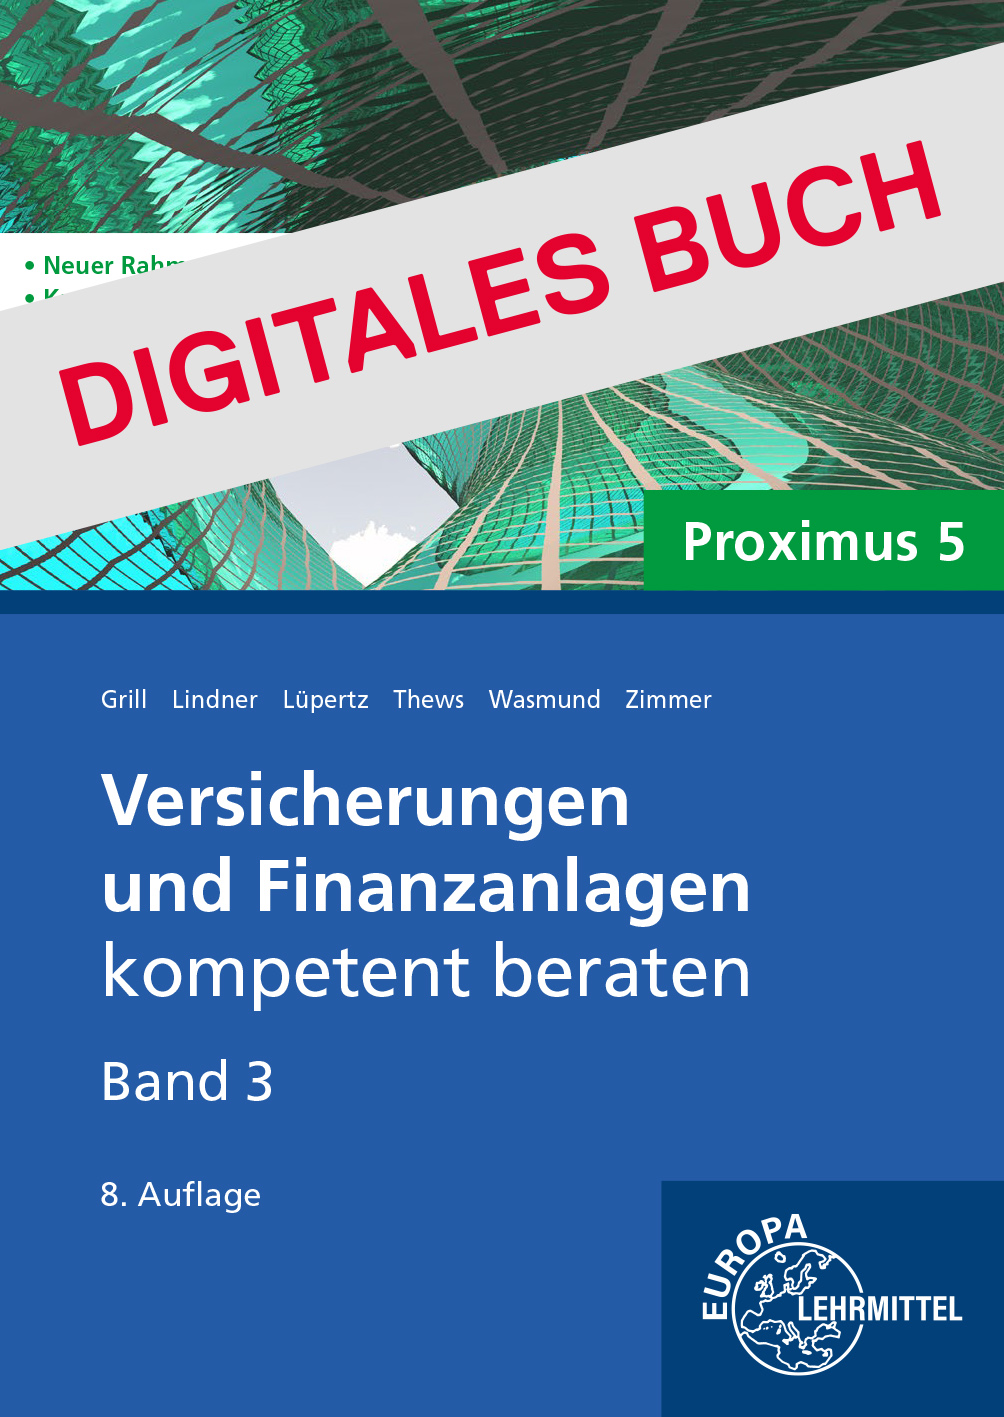 Versicherungen und Finanzanlagen, Band 3, Proximus 5 - Digitales Buch